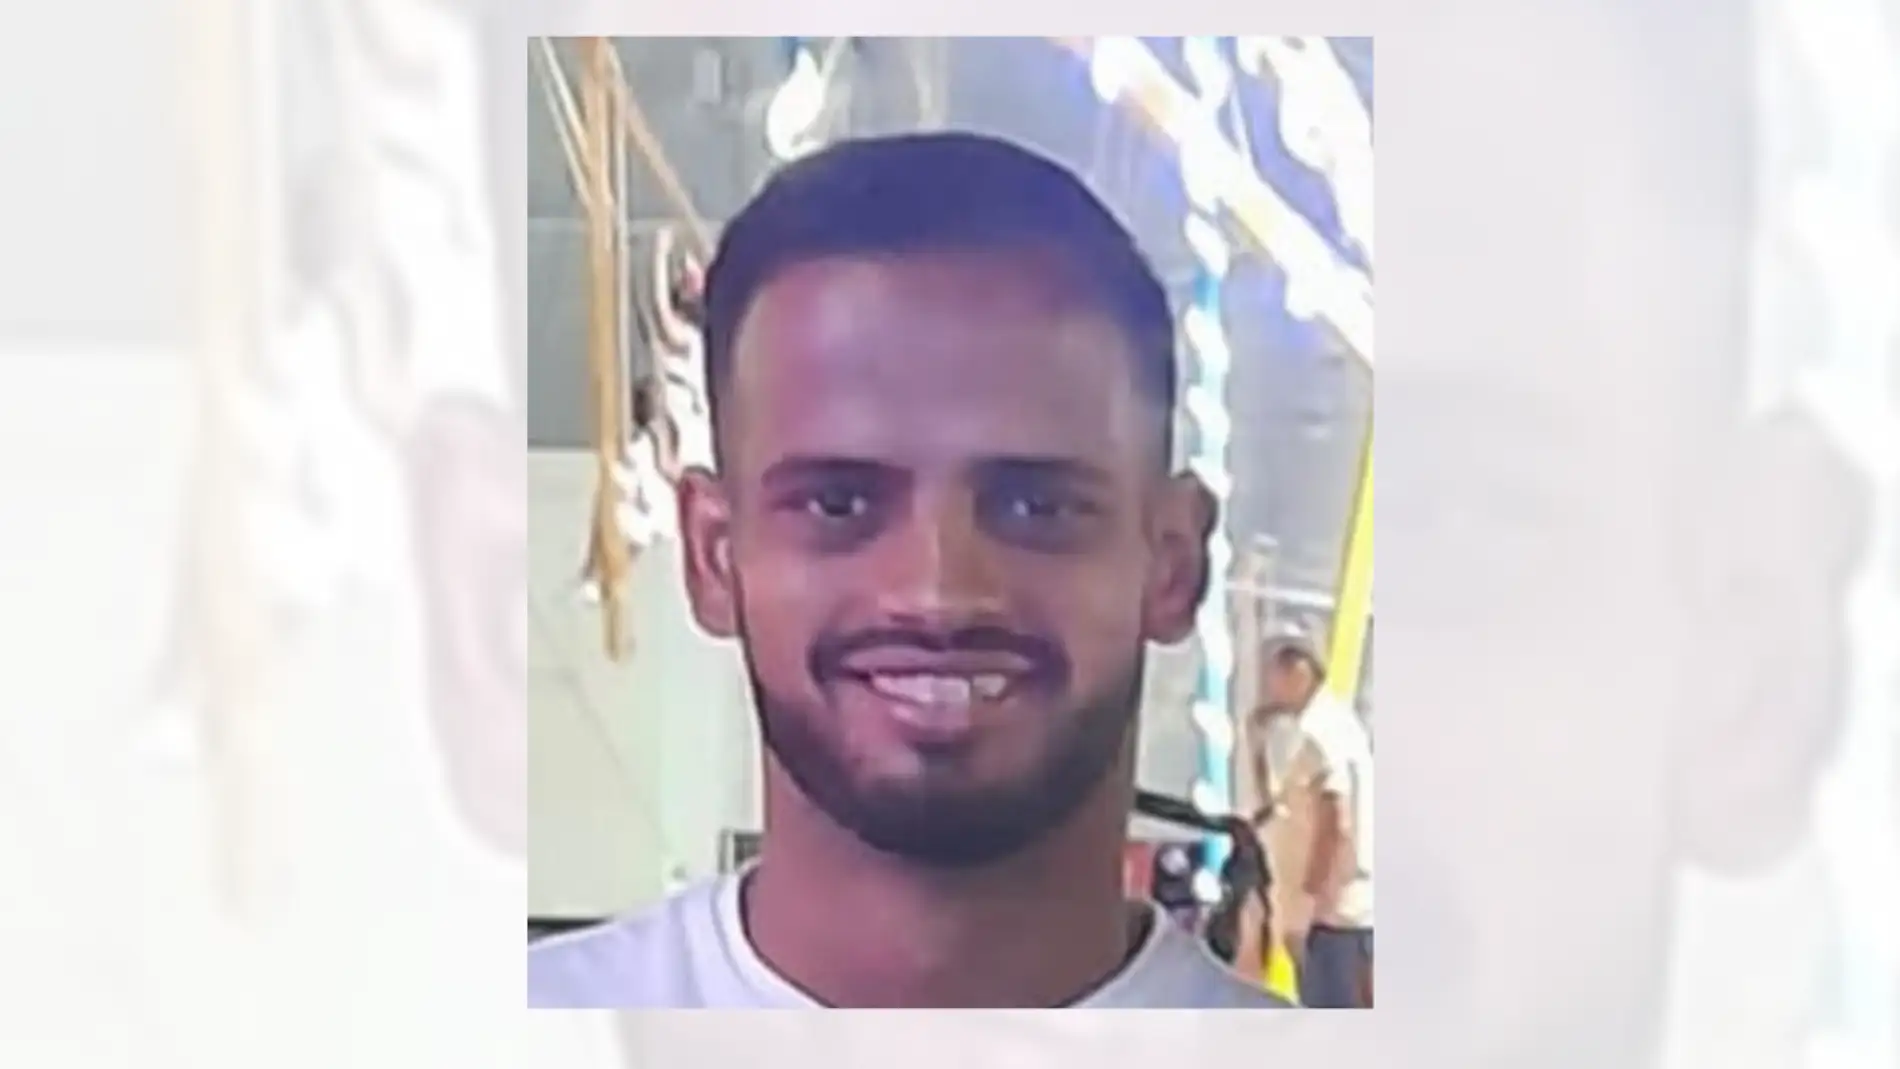 Buscan a un joven de 23 años desaparecido en Sevilla desde hace una semana 